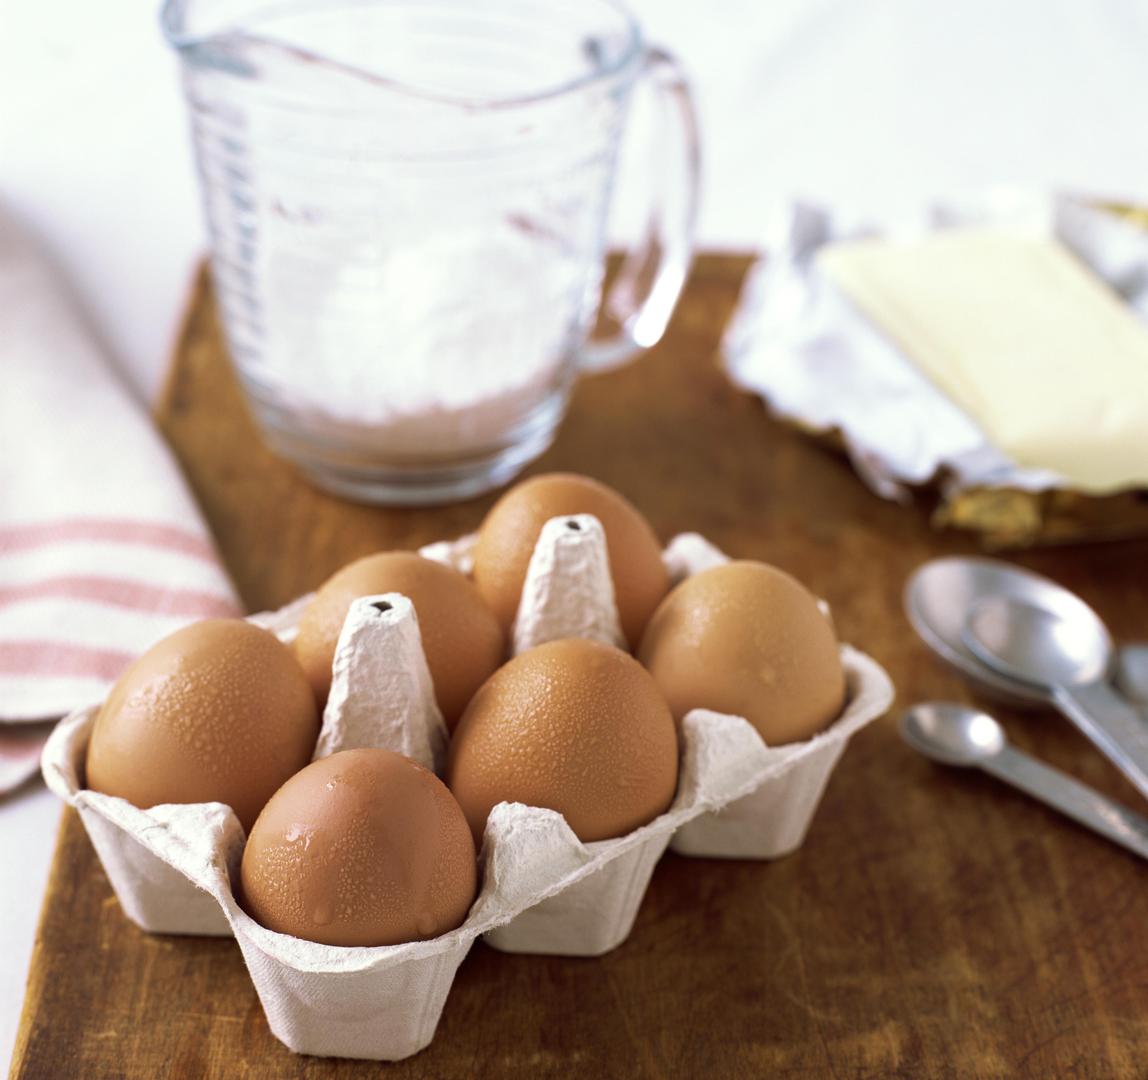 Kako napraviti savršeno kuhana jaja?

